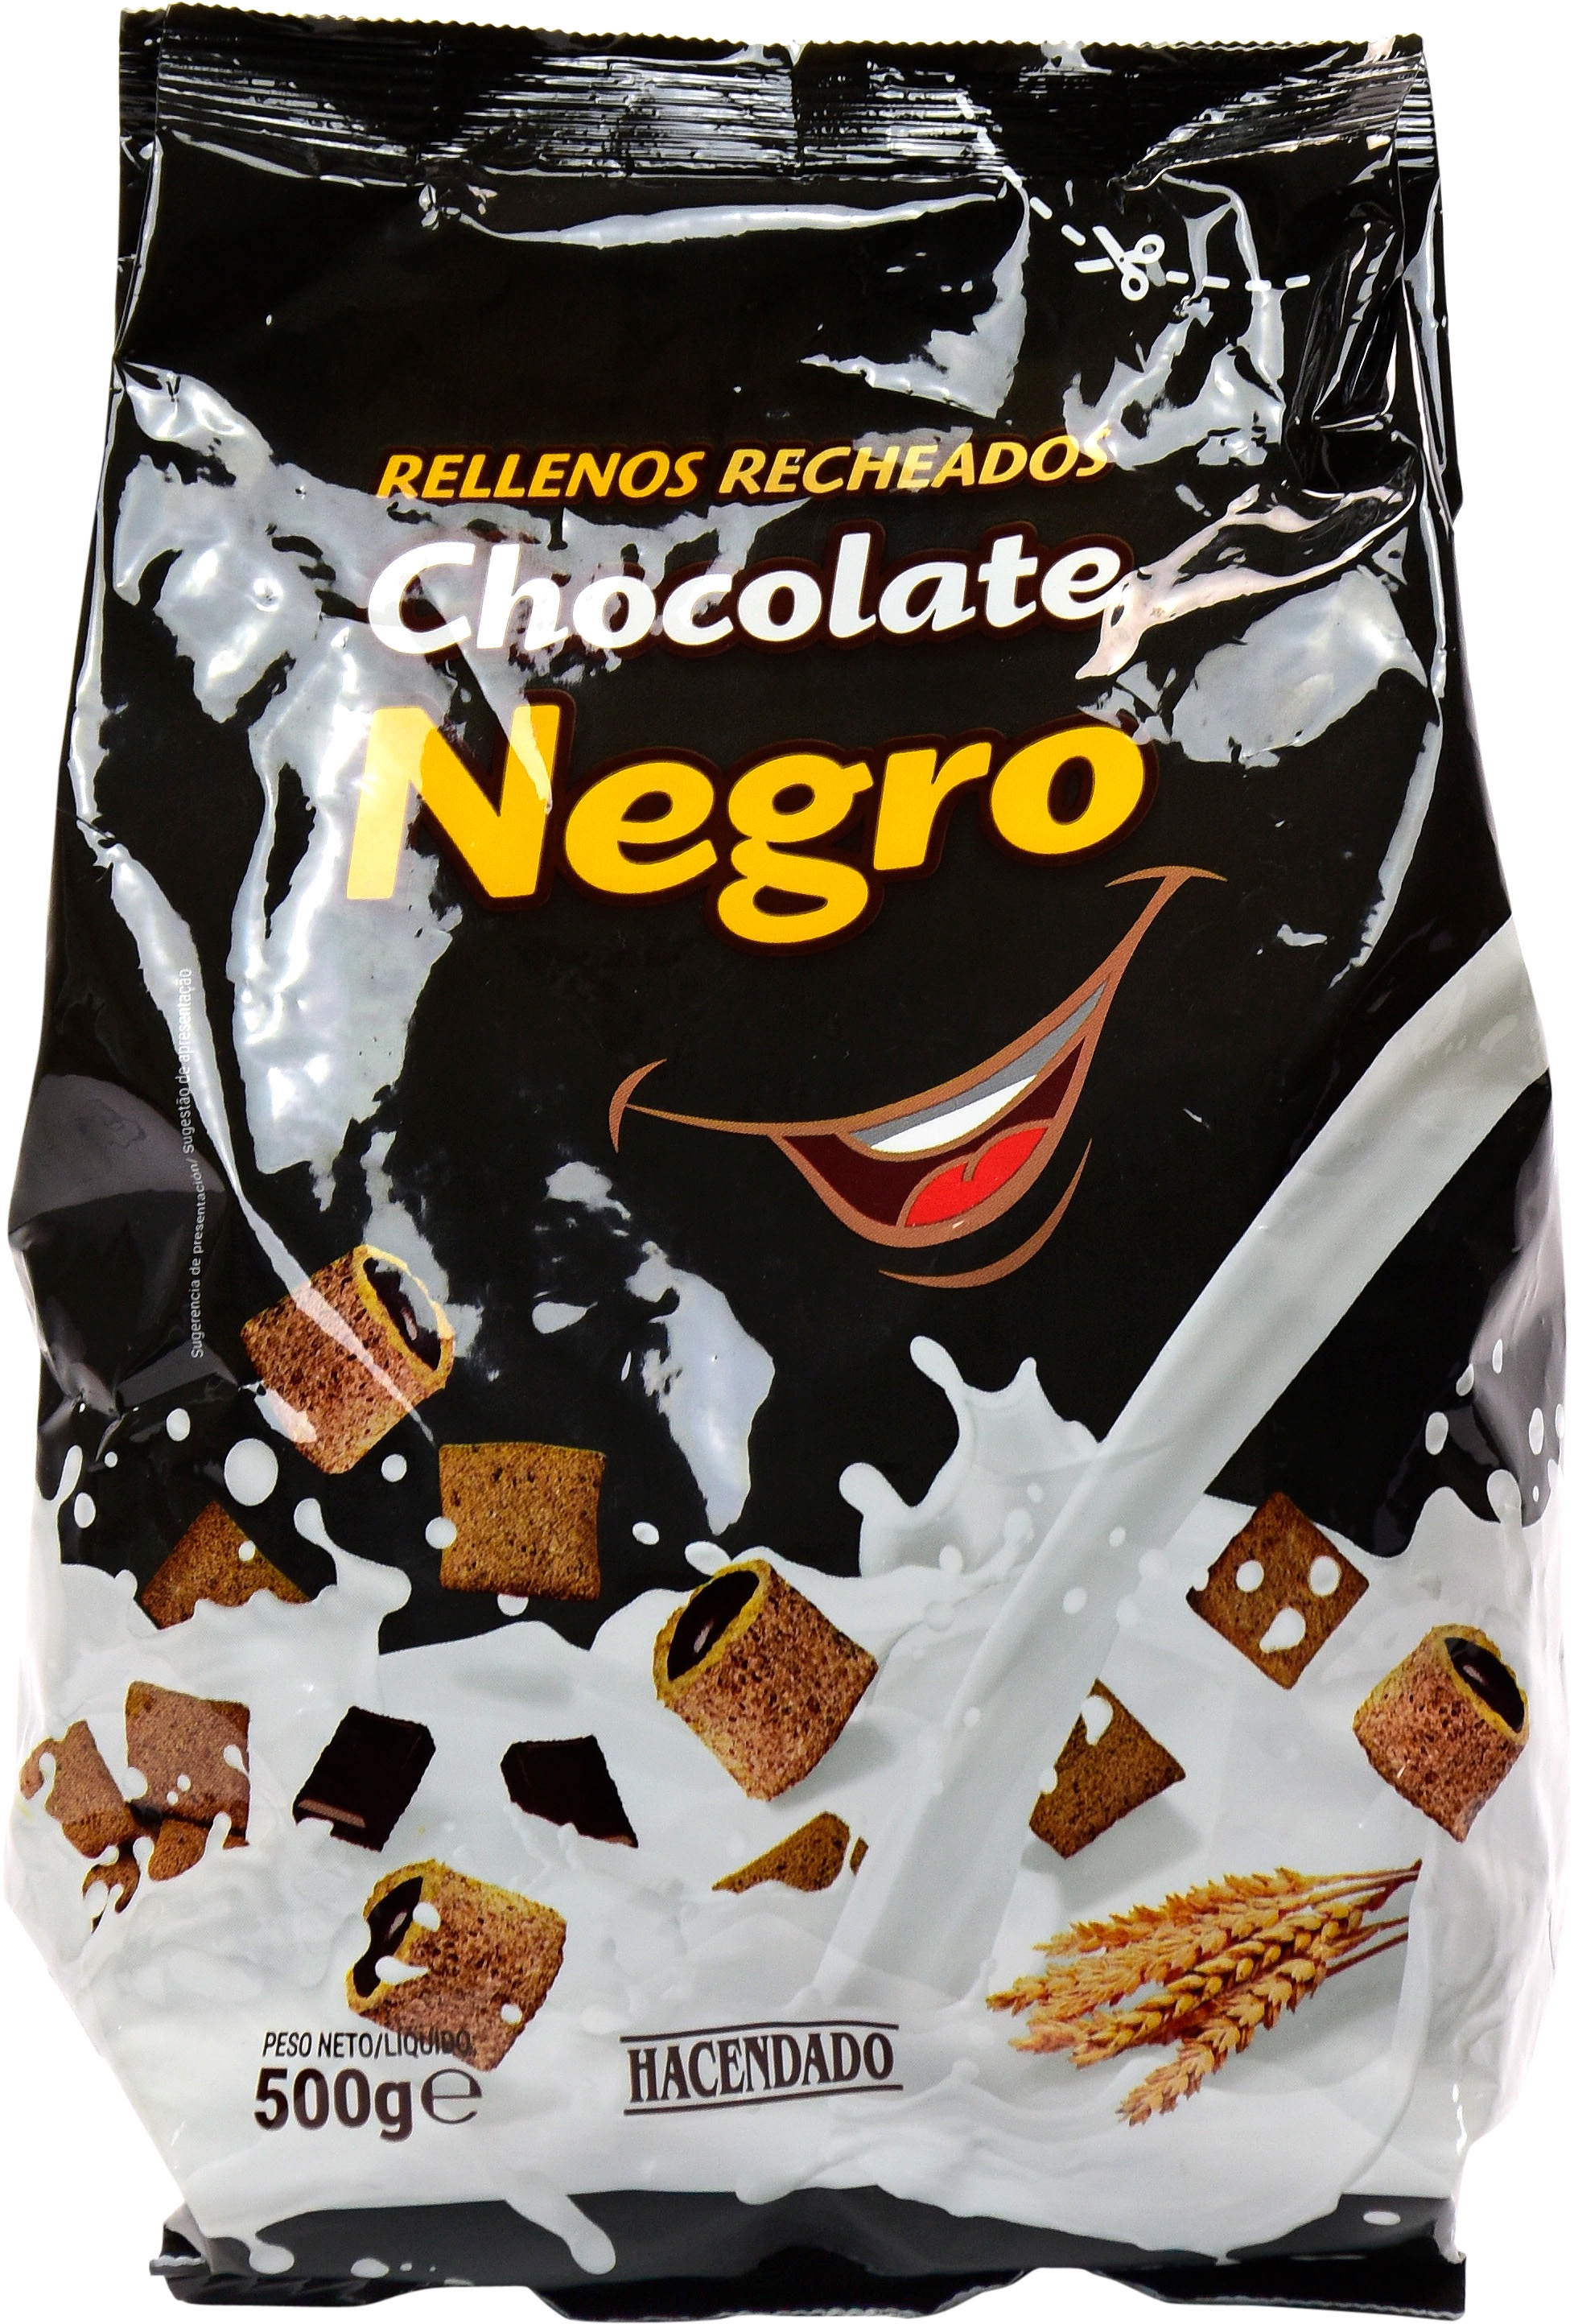 CHOCOLATE NEGRO.